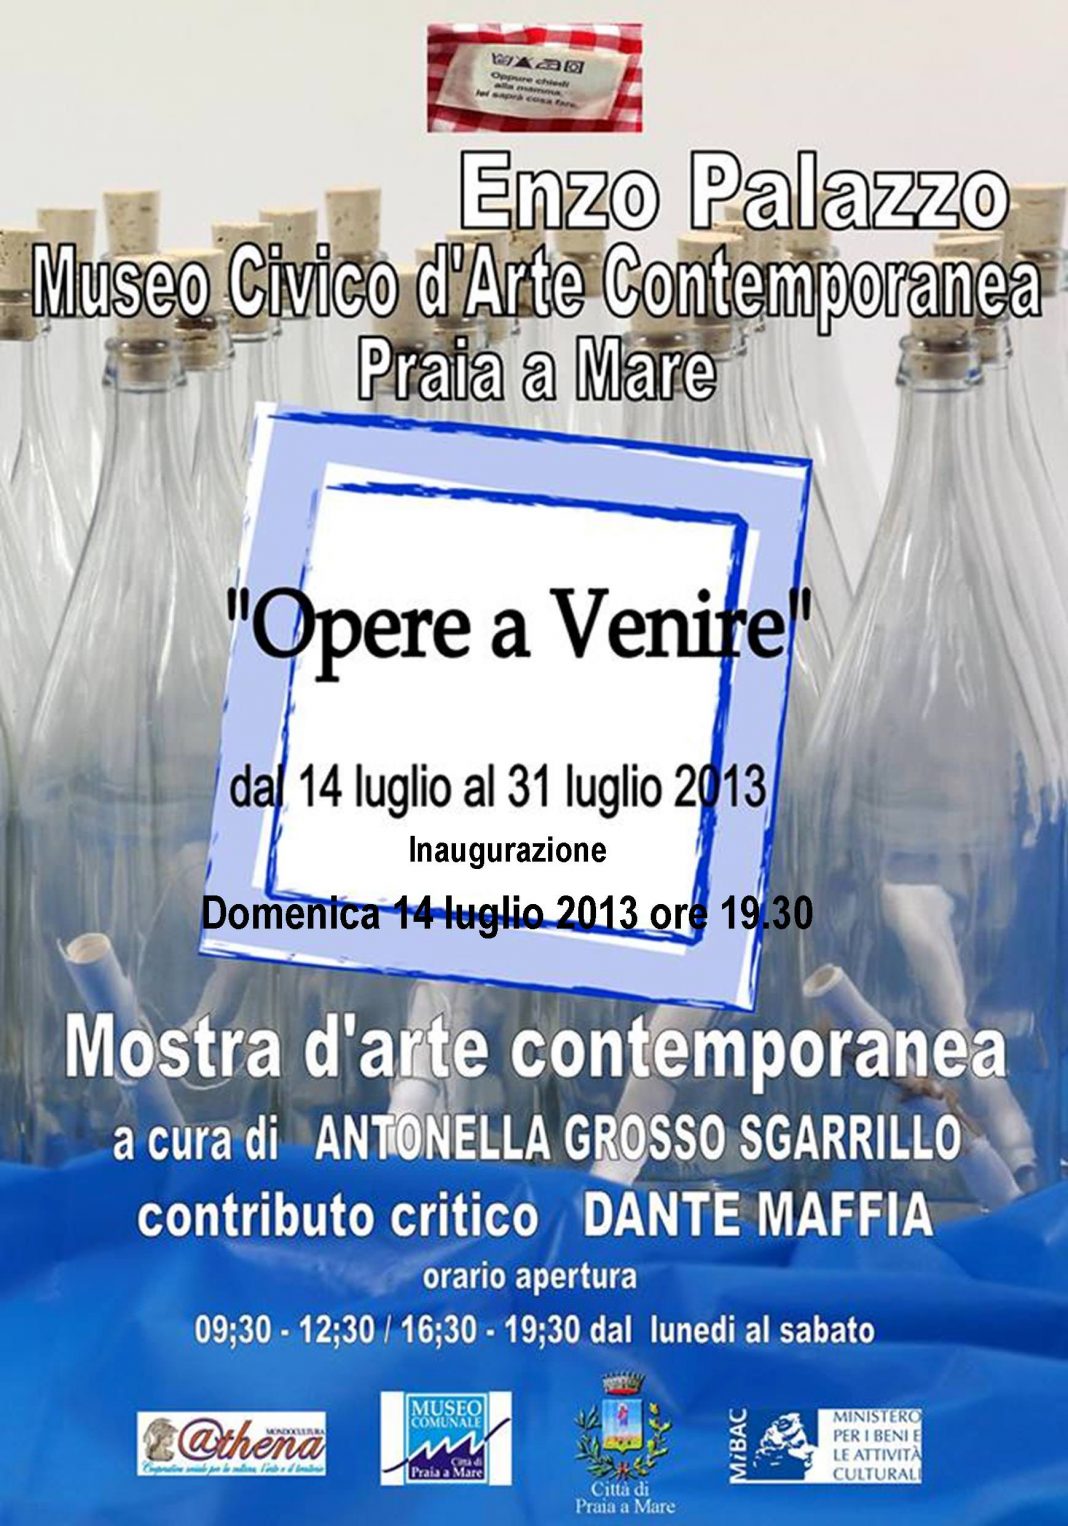 Enzo Palazzo – Opere a venirehttps://www.exibart.com/repository/media/eventi/2013/07/enzo-palazzo-8211-opere-a-venire-1068x1526.jpg